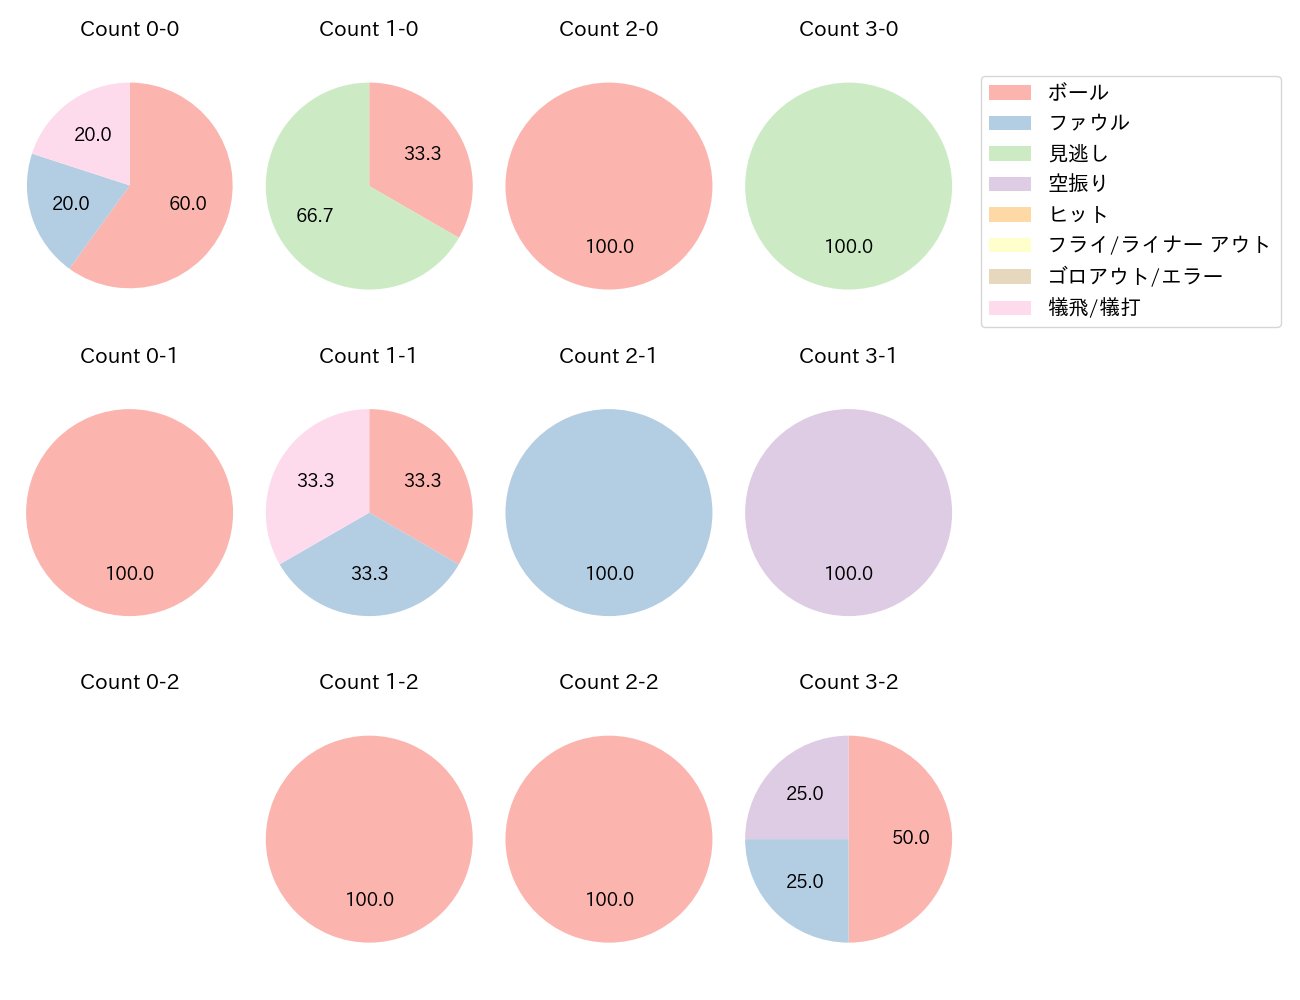 上茶谷 大河の球数分布(2022年9月)